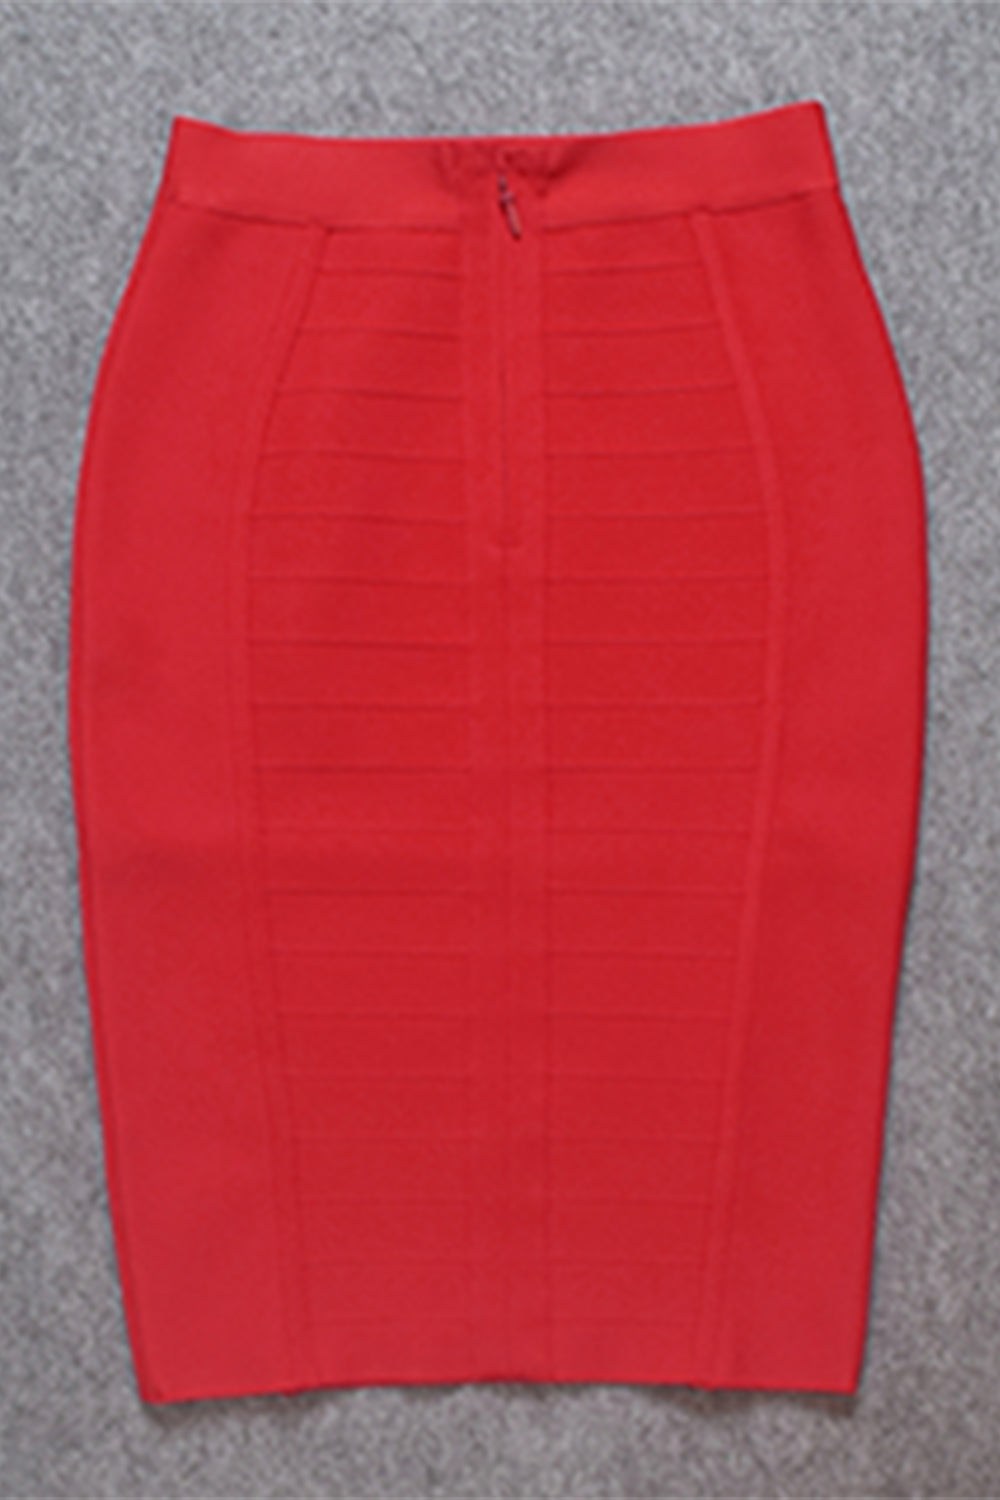 red skirt, red bandage skirt, red pencil skirt, skirt, bandage skirt, high waist bandage skirt, knee length bandage skirt, stripe bandage skirt, pencil skirt, office skirt, bandage skirt for women, women’s bottom